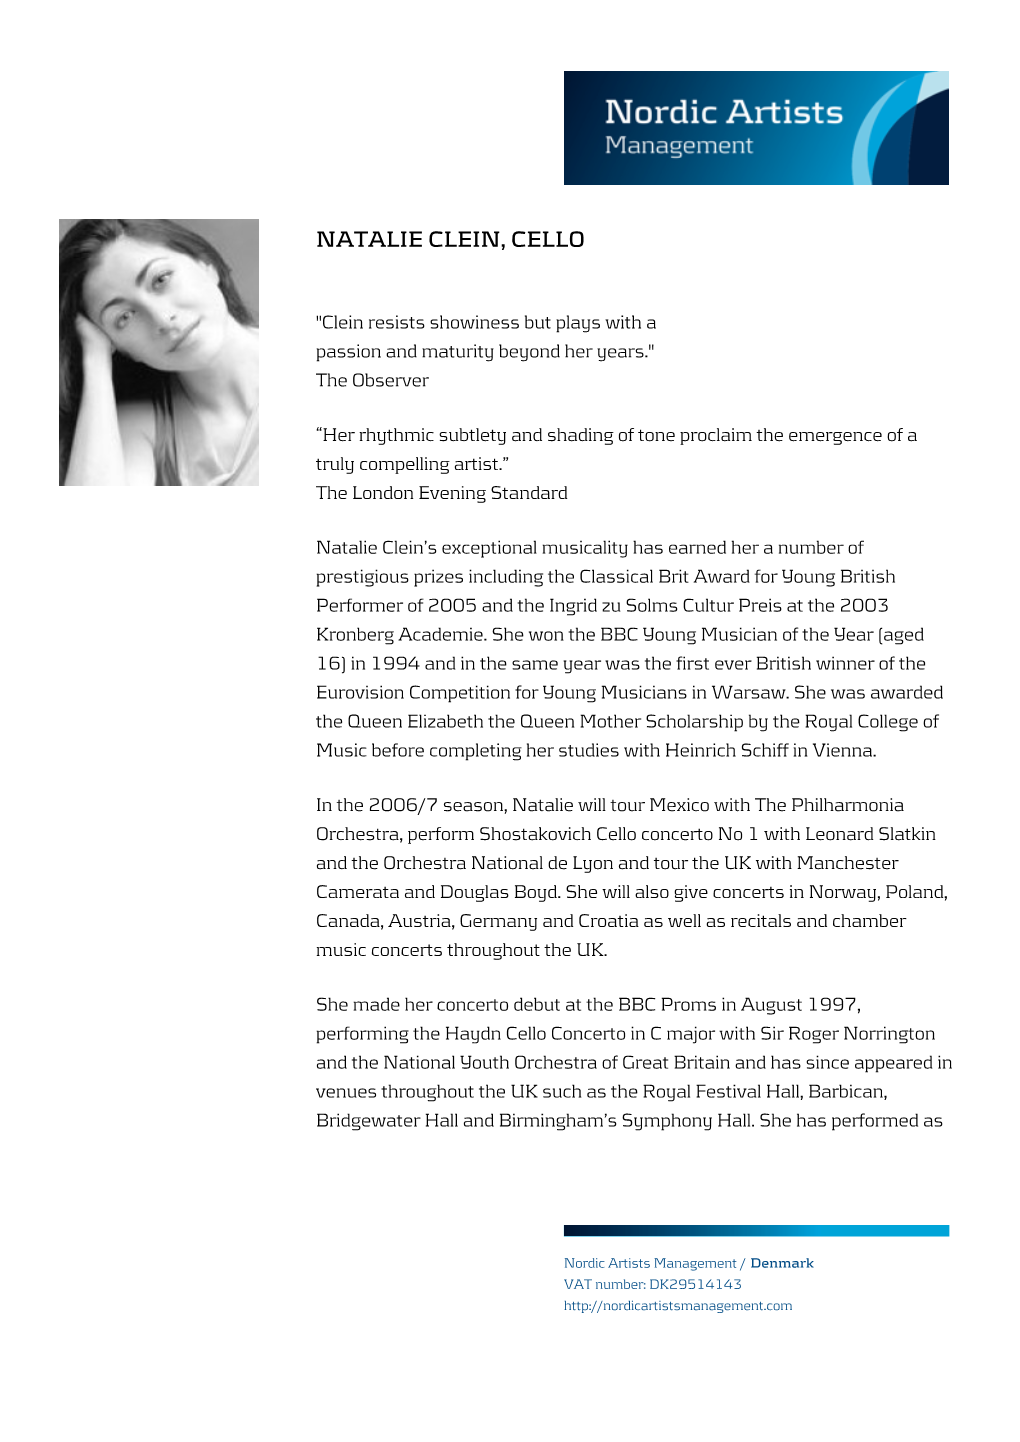 Natalie Clein, Cello